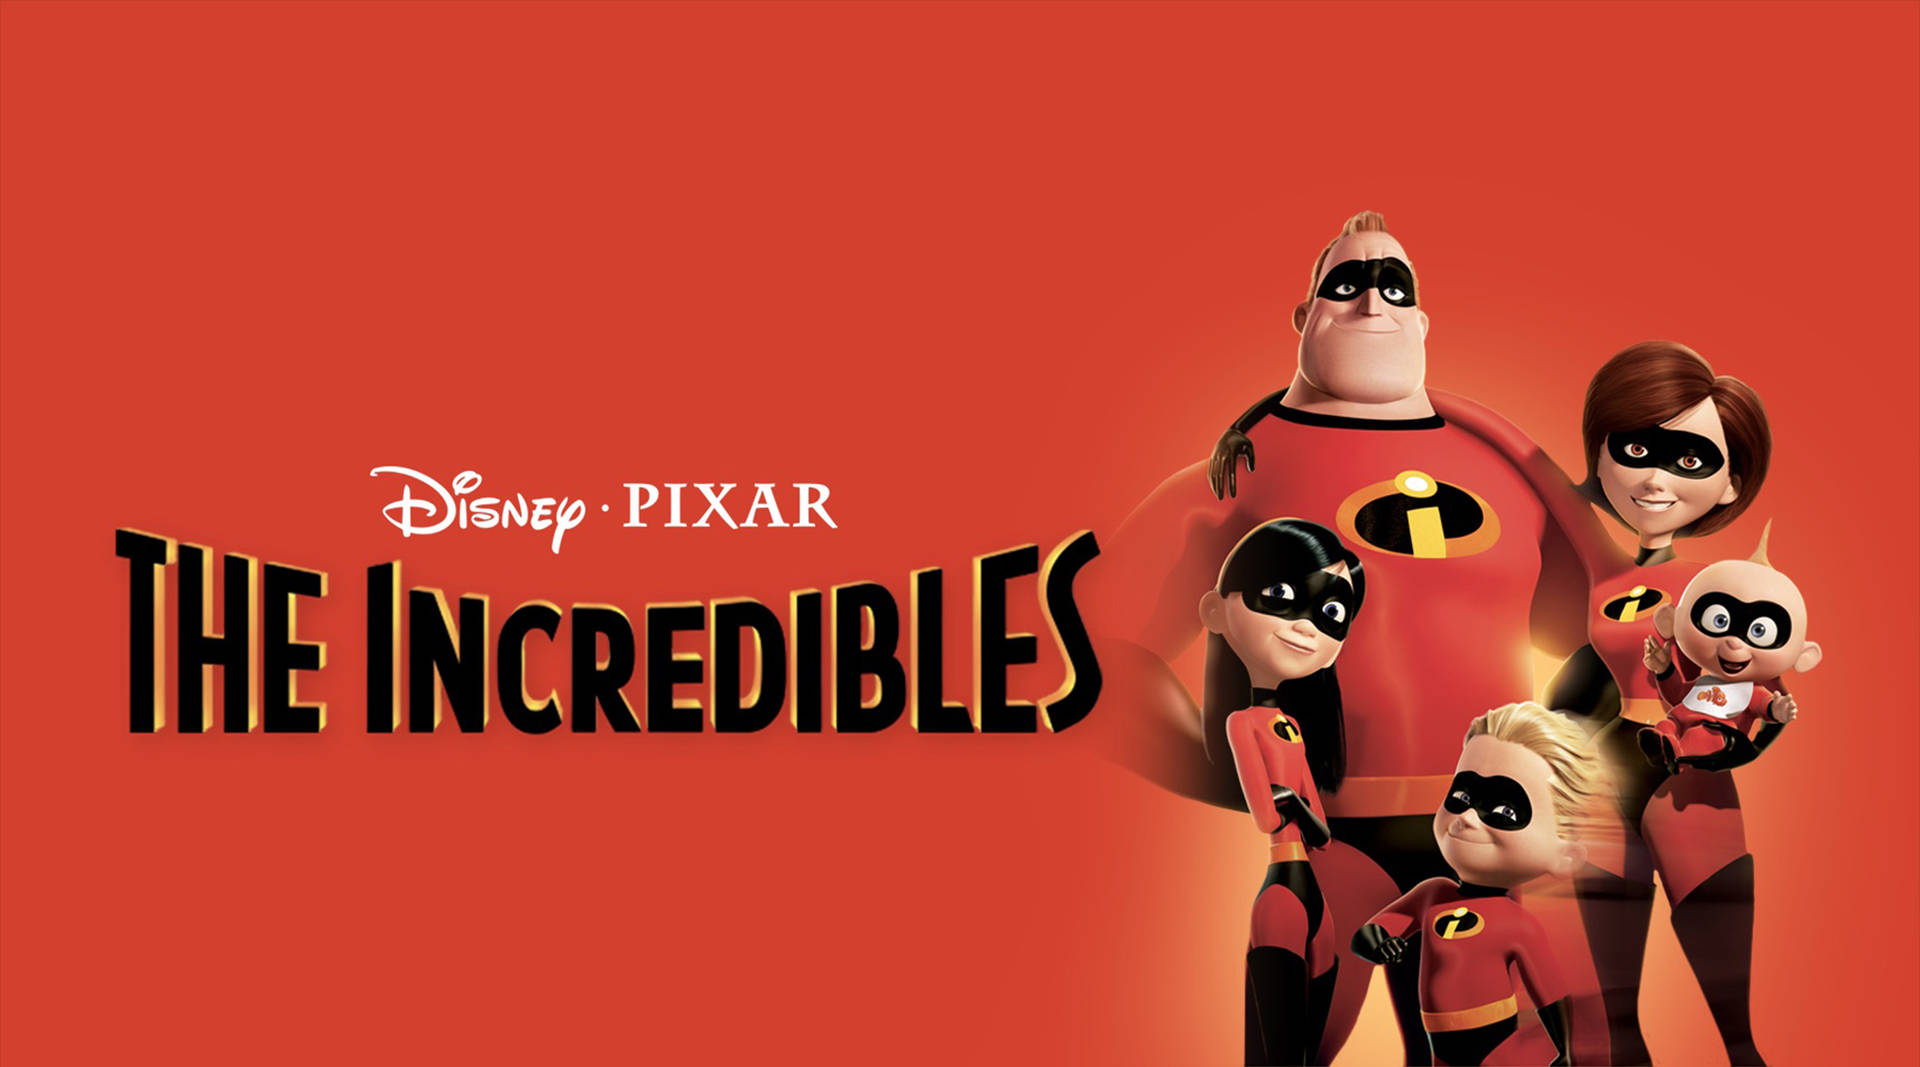 Mr. Incredible Pixar The Incredibles Movie Wallpaper